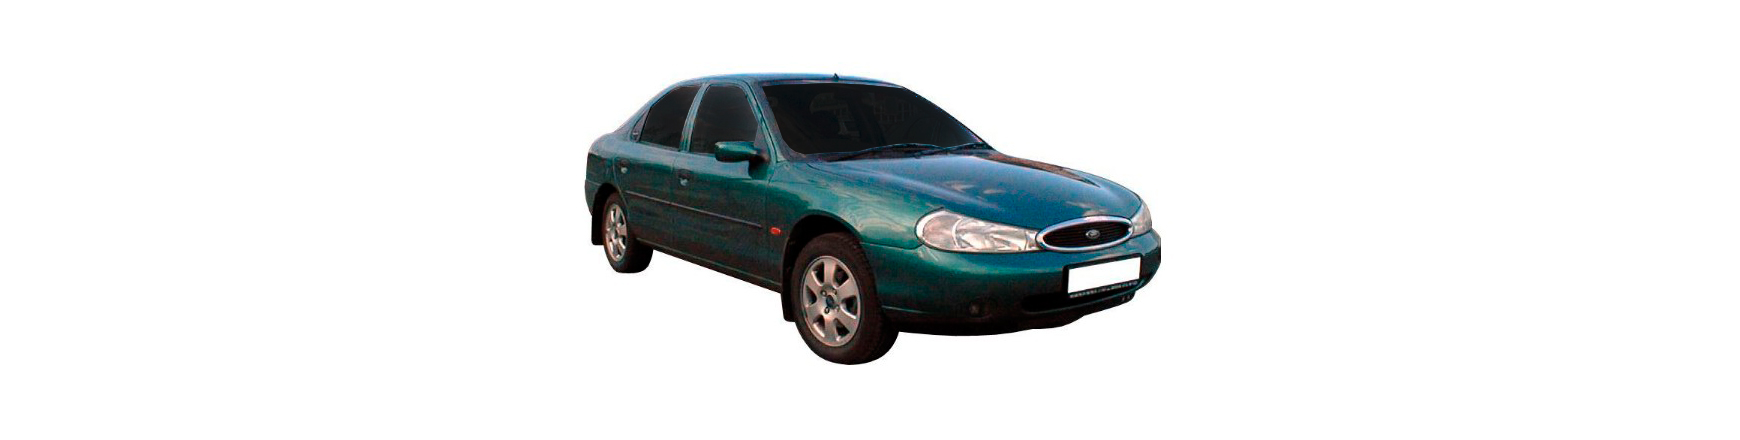 Recambios de Ford Mondeo de 1996, 1997, 1998, 1999 y 2000.